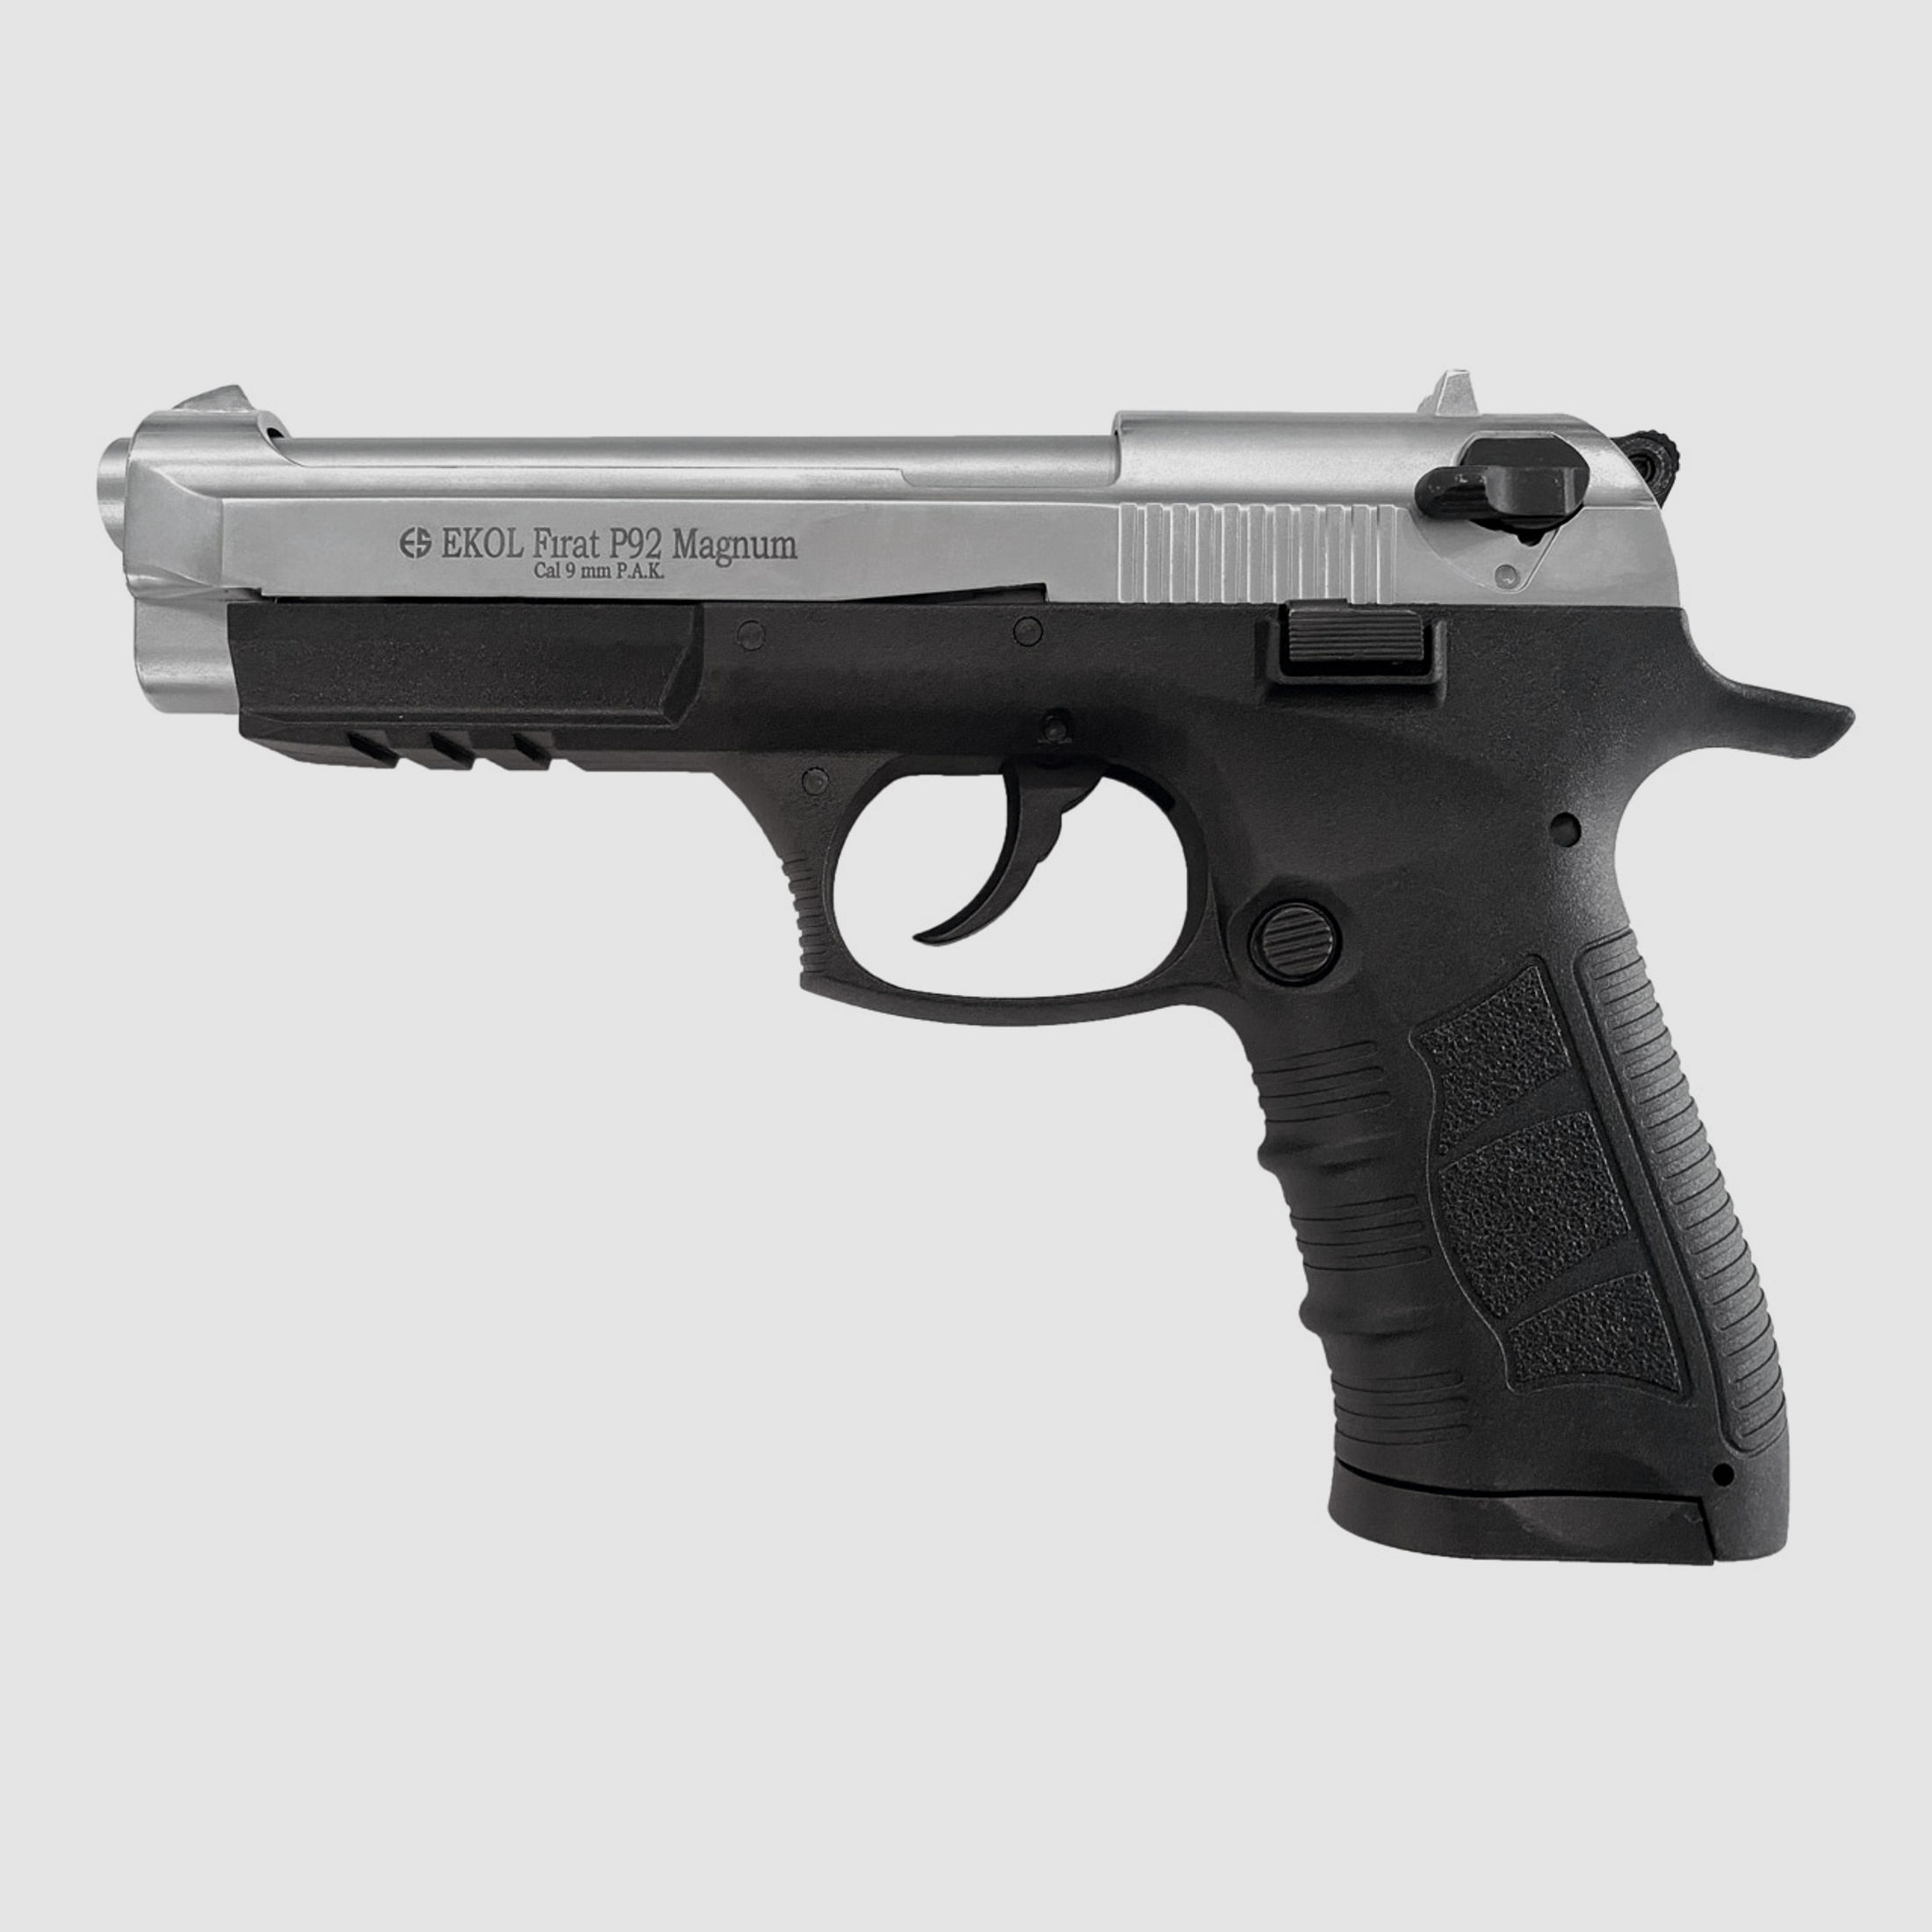 Schreckschuss Pistole Ekol P92 Magnum titan Kaliber 9 mm P.A.K.(P18)